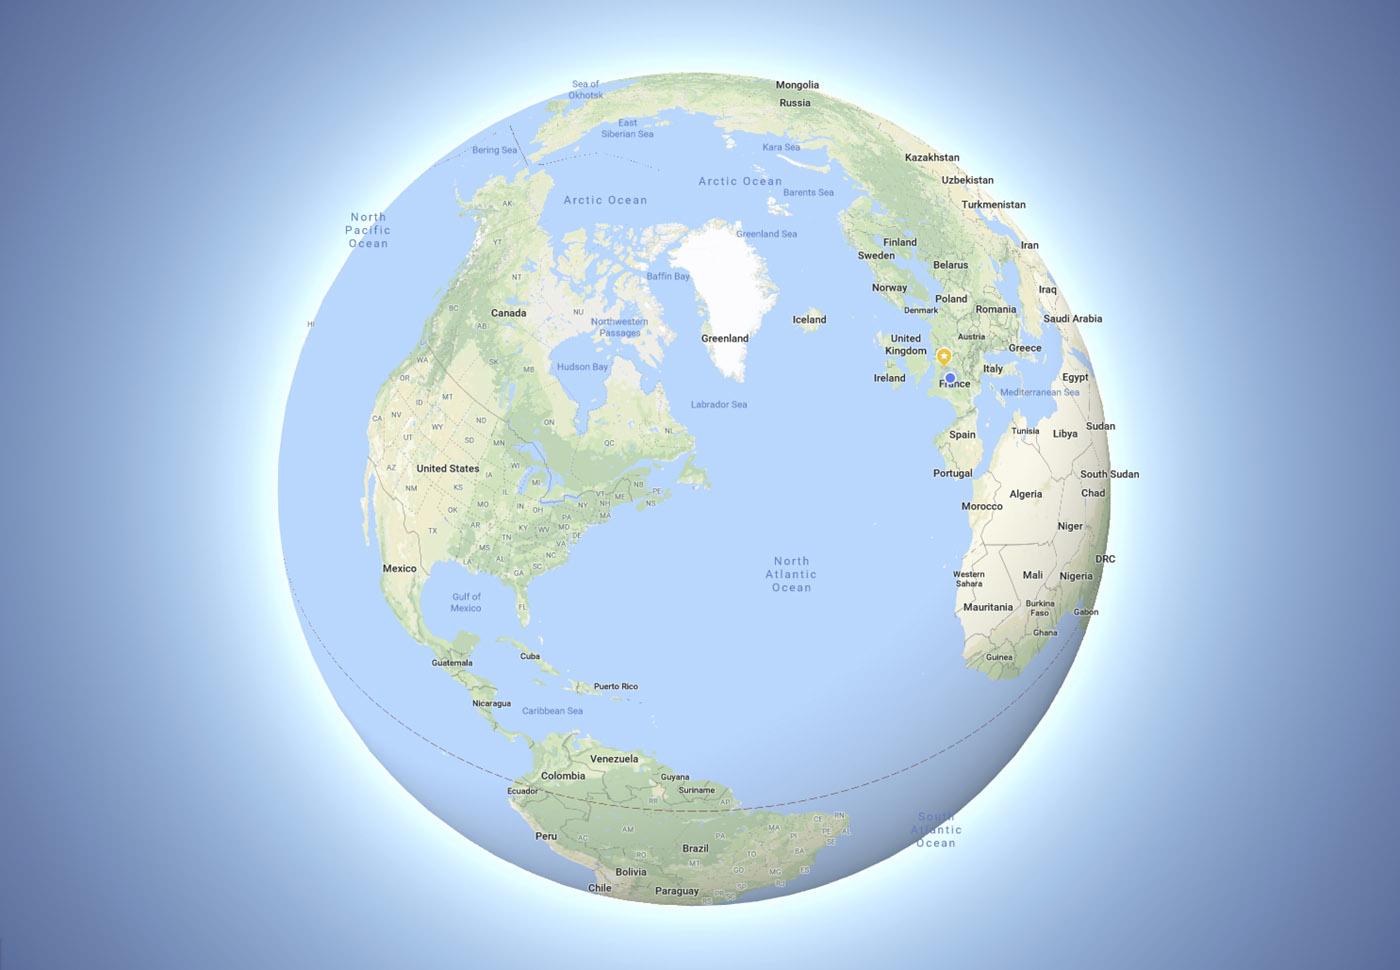 Google Maps agora mostra o globo terrestre no lugar de um mapa planificado